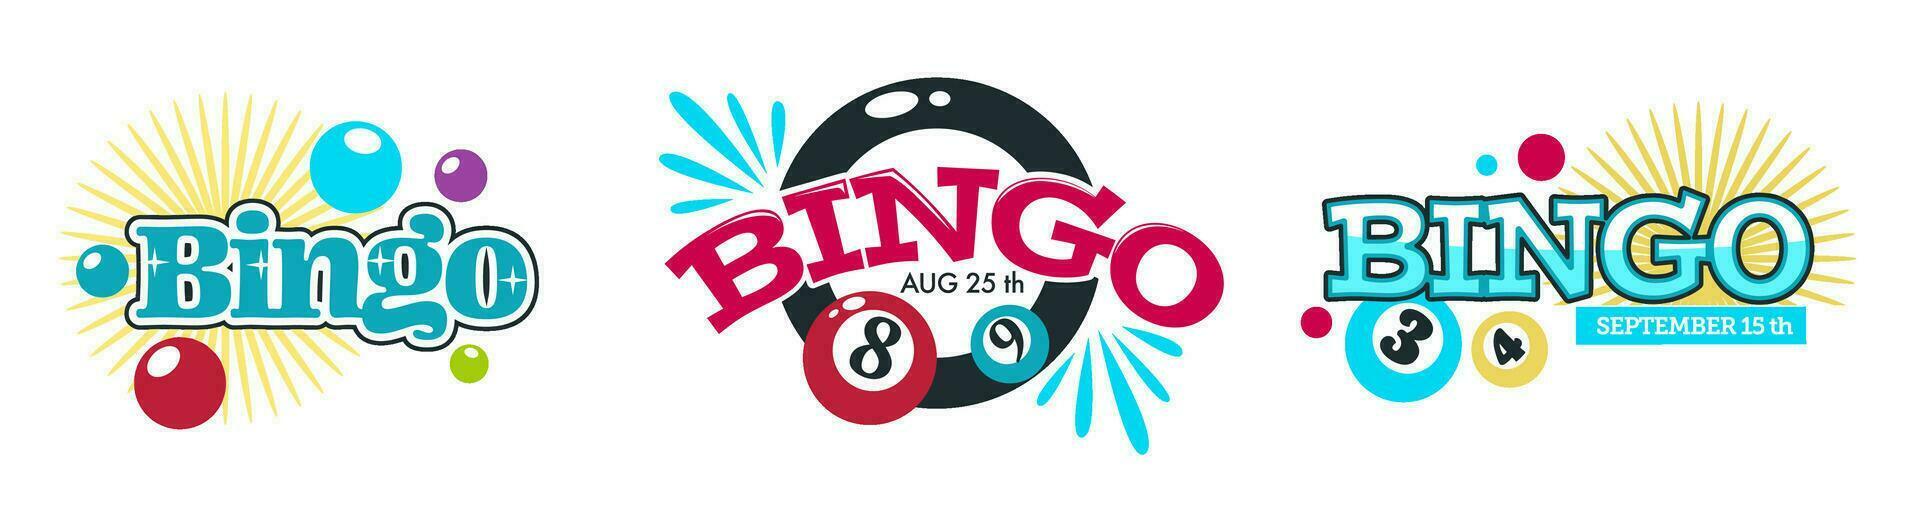 Bingo und Glücksspiel Spiele, Unterhaltung und Spaß vektor